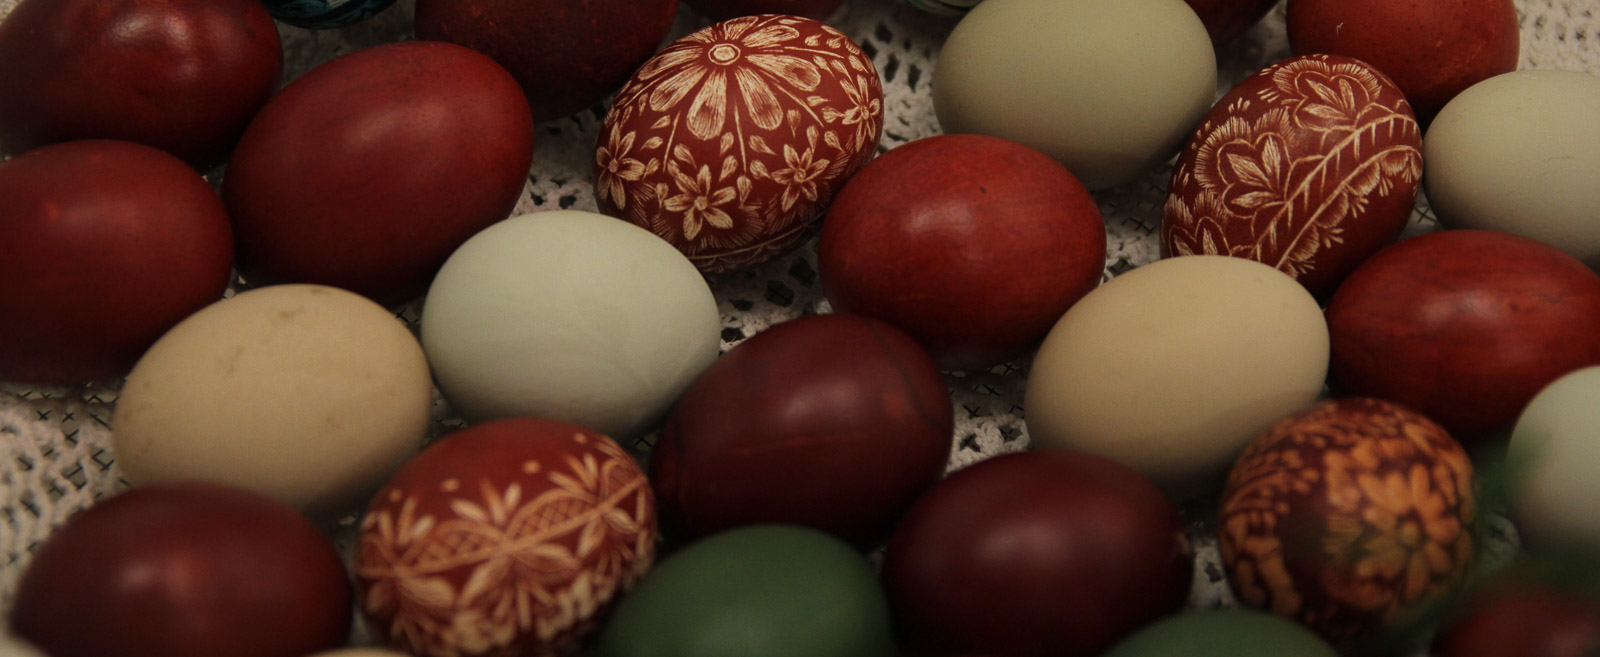 kilkanaście jajek w różnych kolorach